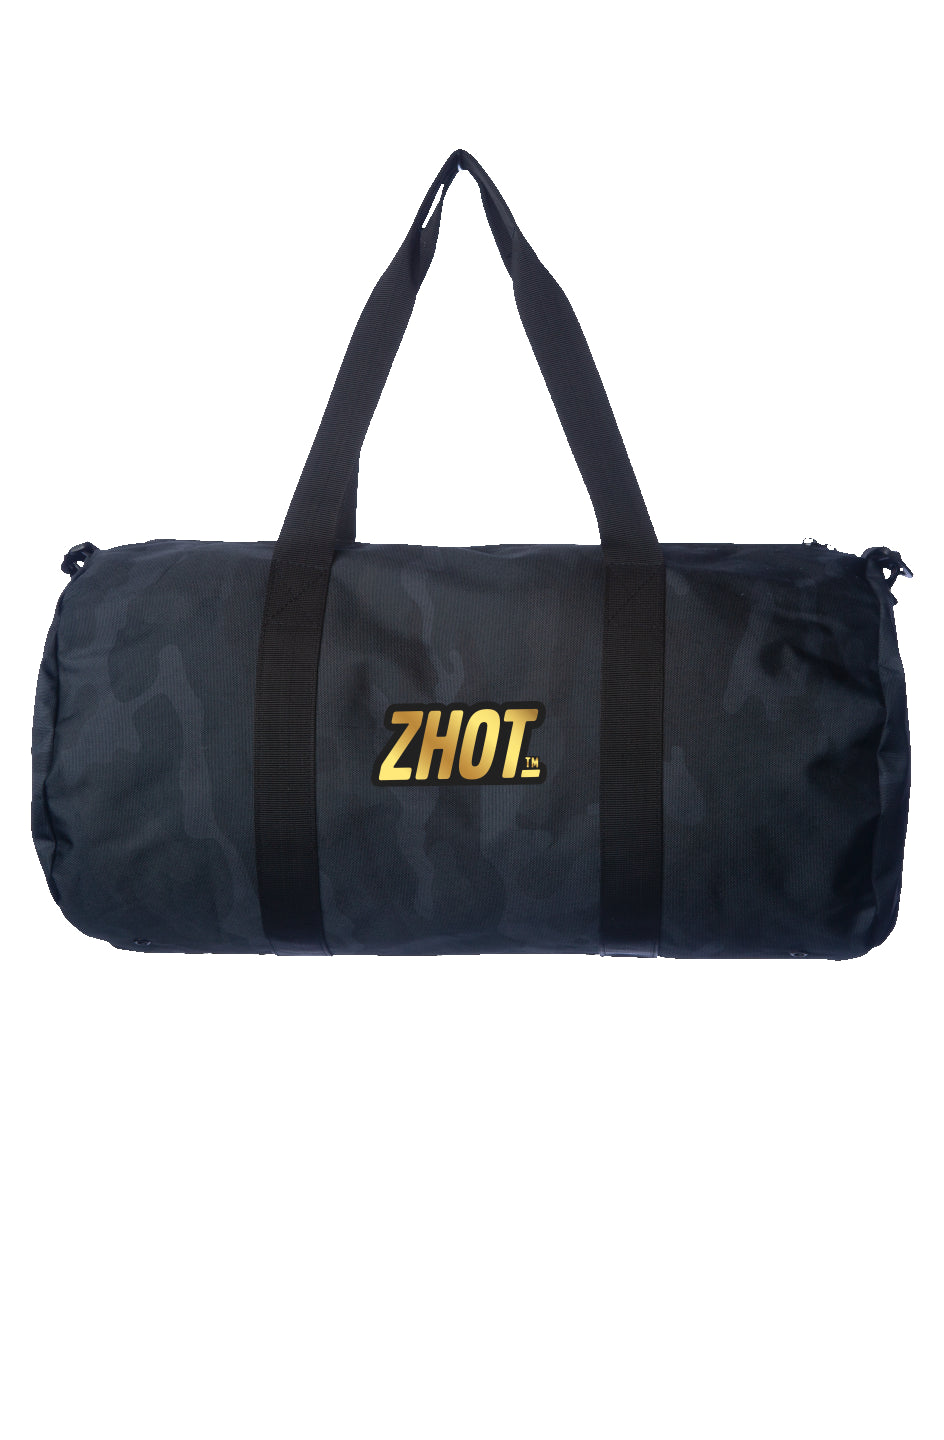 Duffle Black Camo Bag Golden Zhot Logo